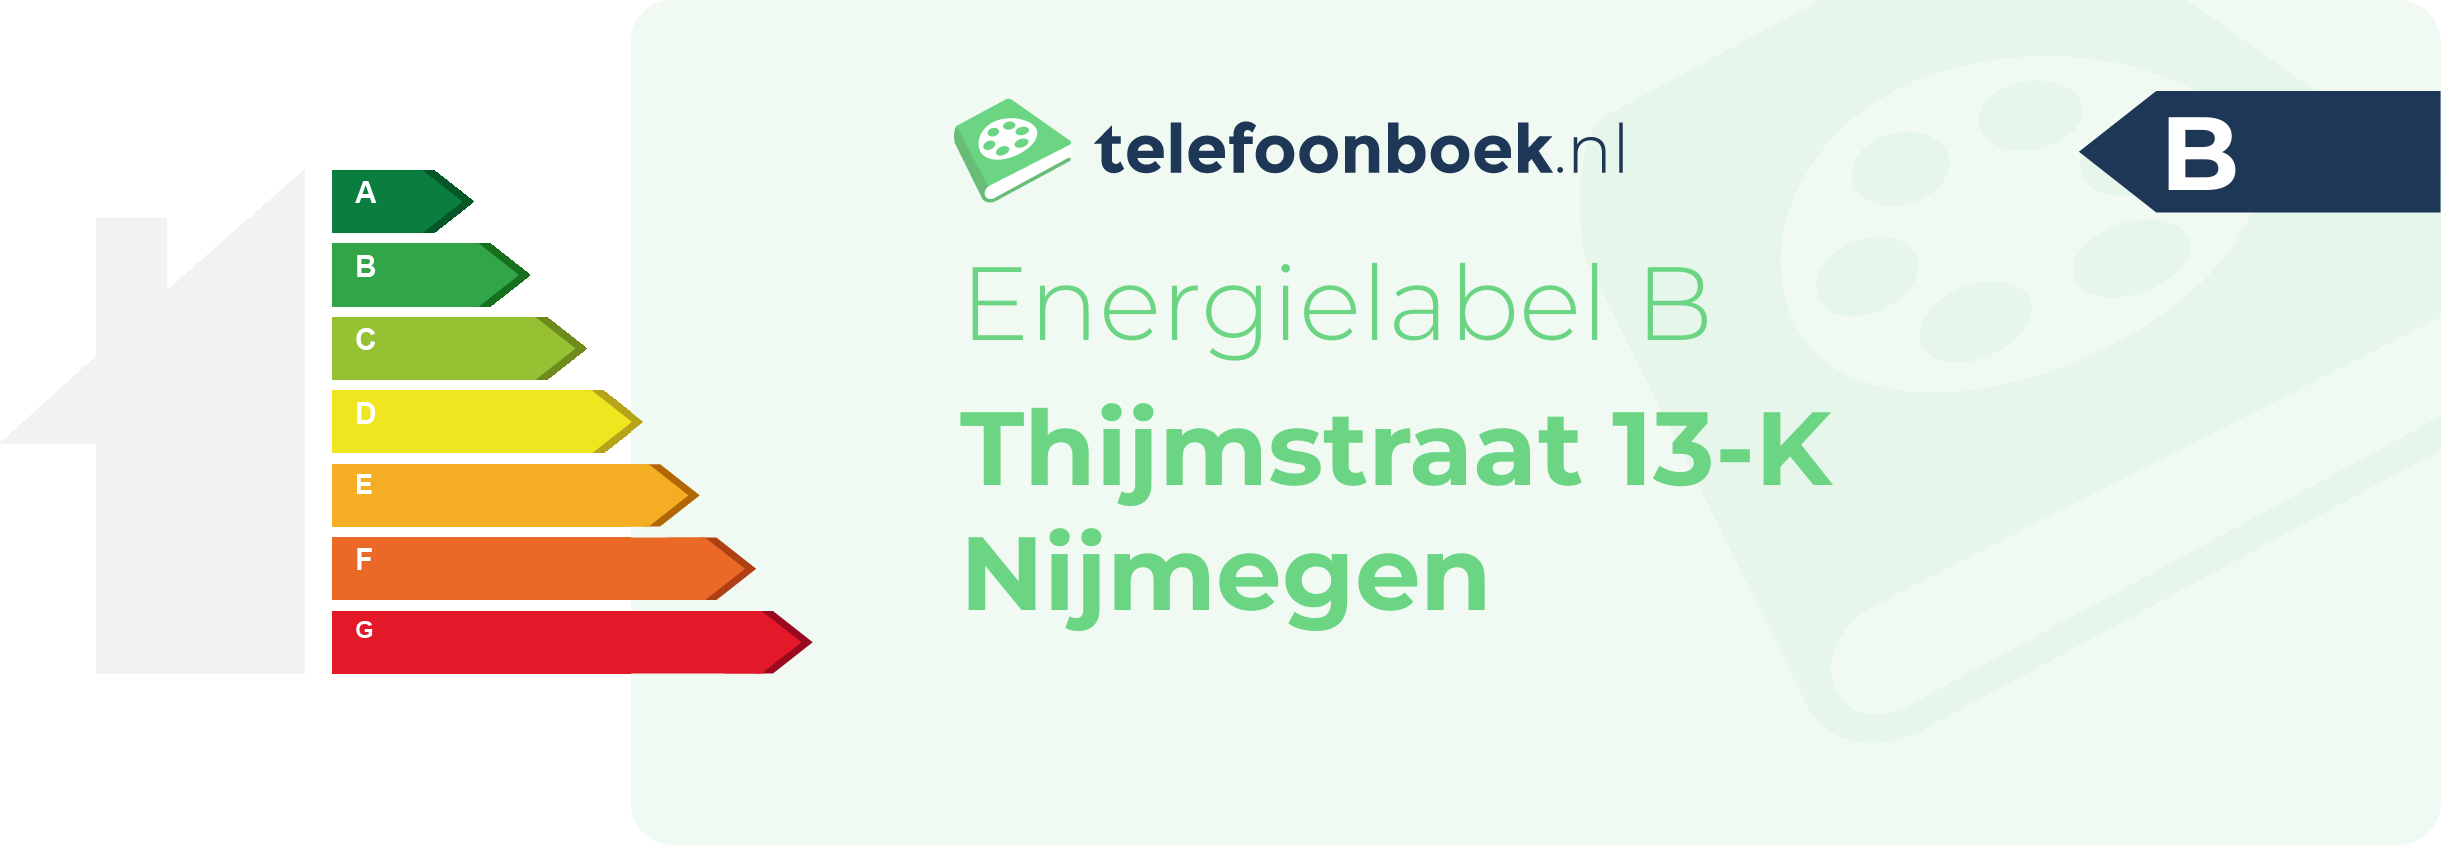 Energielabel Thijmstraat 13-K Nijmegen